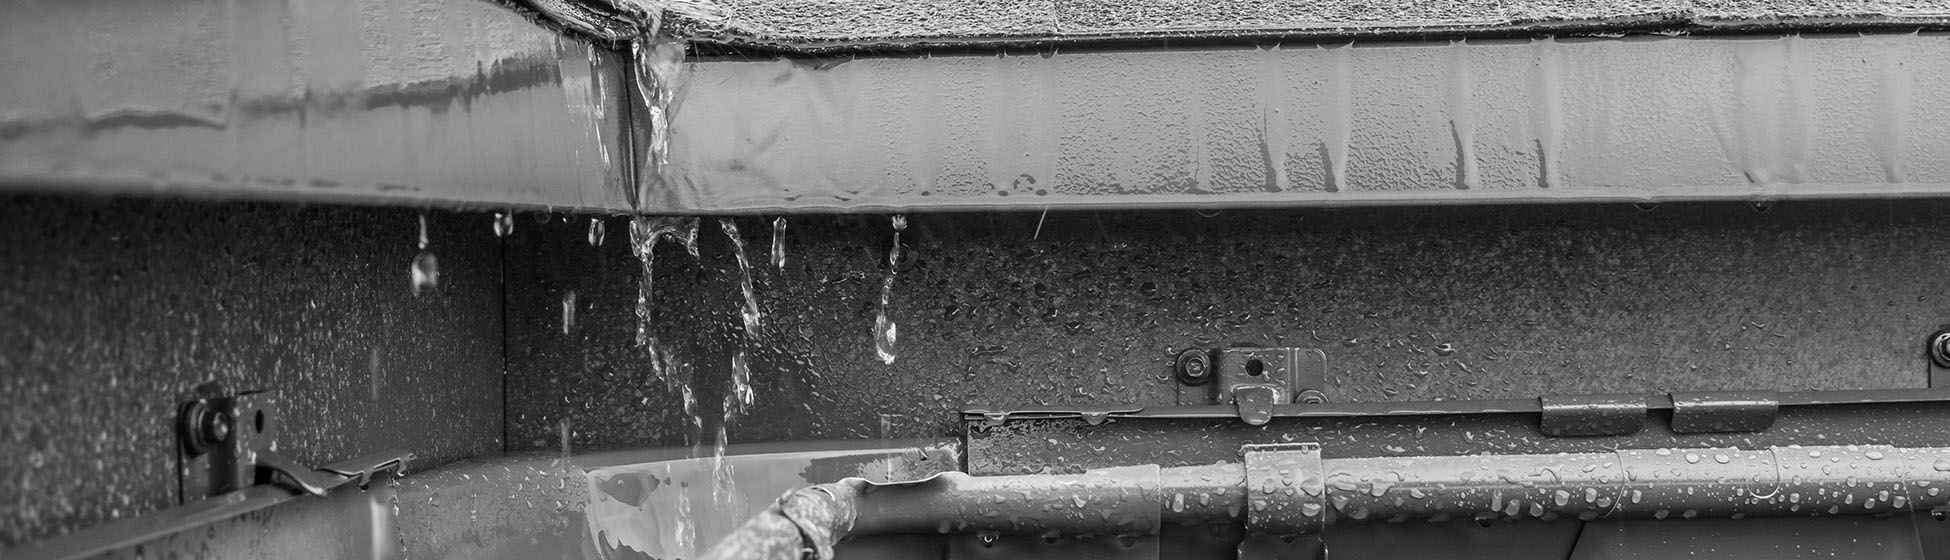 Installation recuperateur eau de pluie sur gouttiere